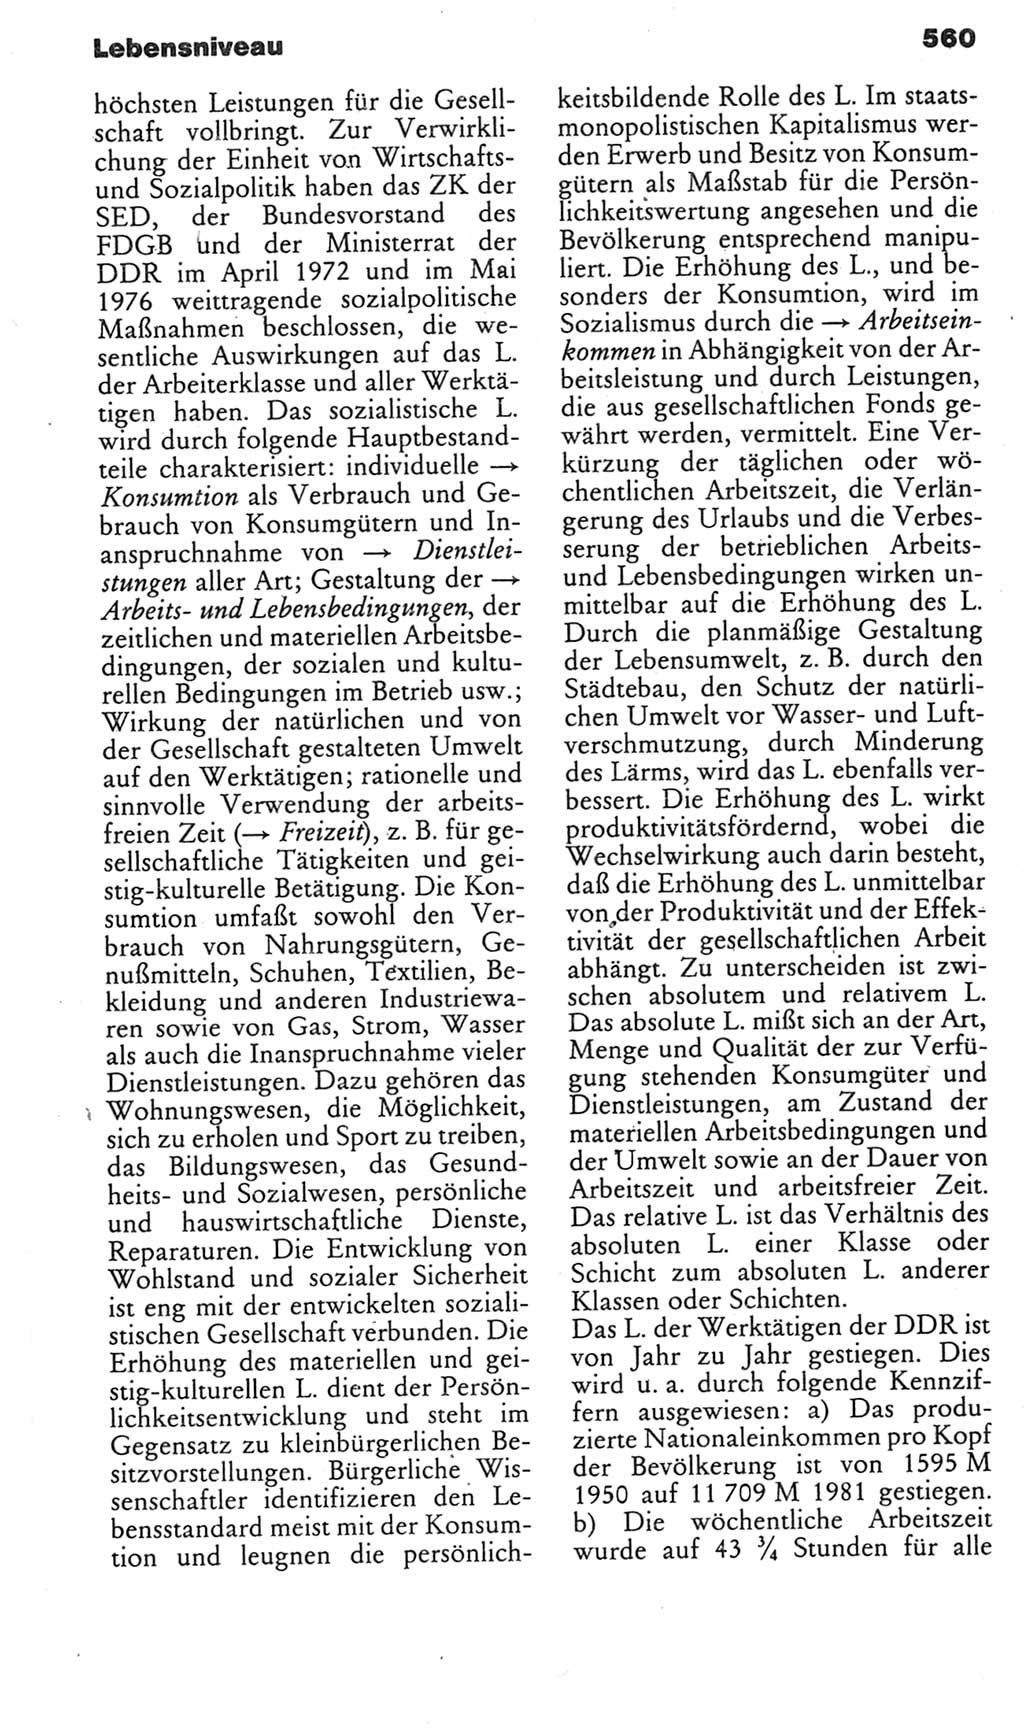 Kleines politisches Wörterbuch [Deutsche Demokratische Republik (DDR)] 1985, Seite 560 (Kl. pol. Wb. DDR 1985, S. 560)